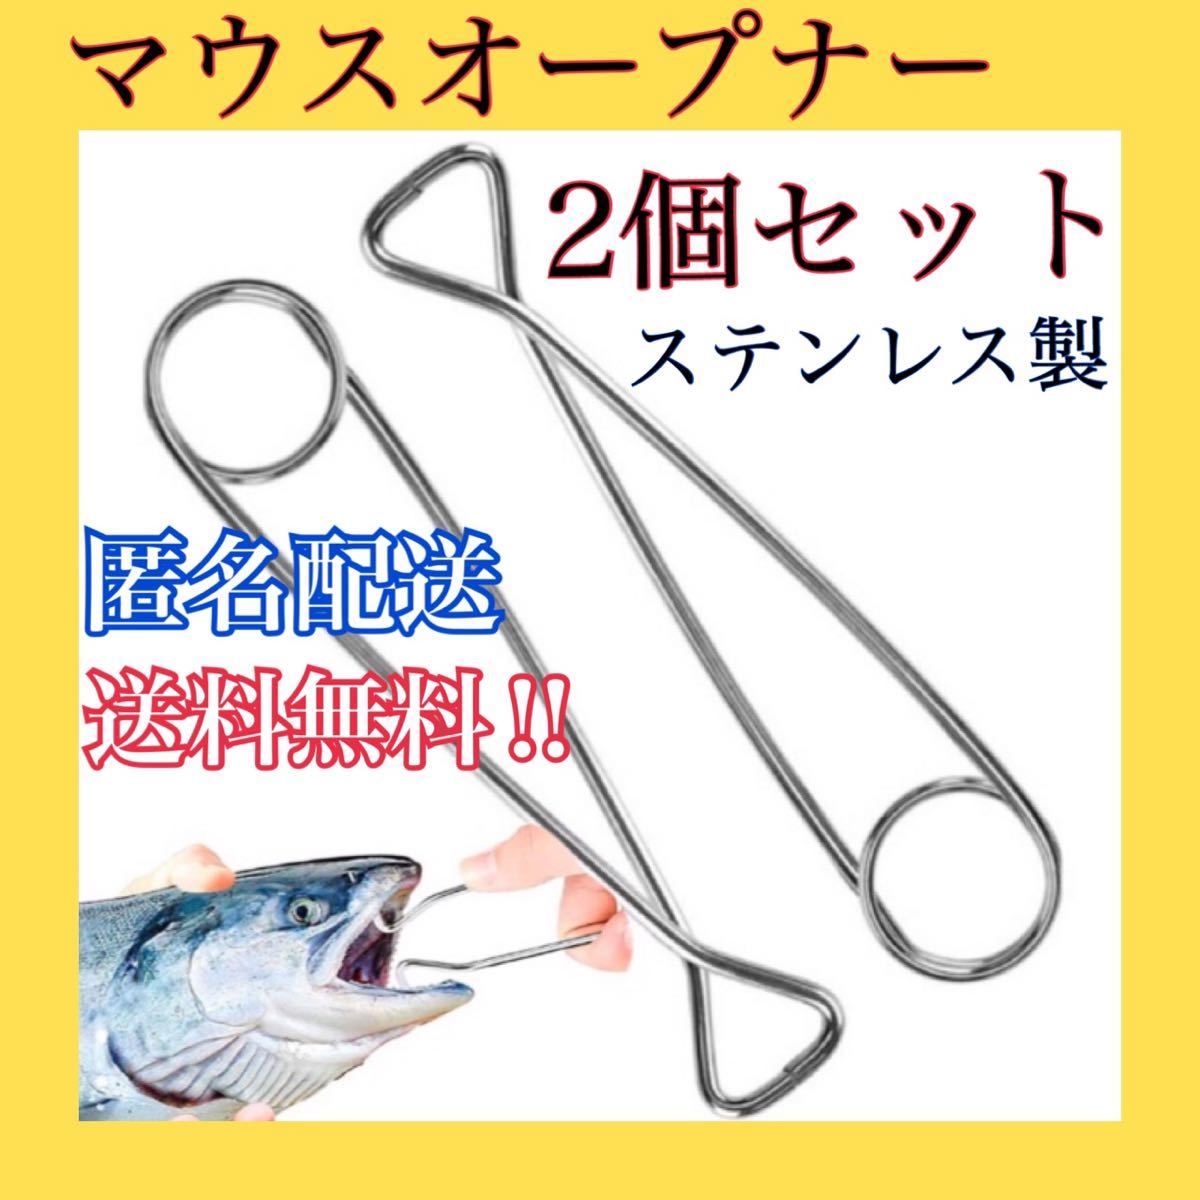 マウスオープナー 2個セット 魚口オープナー 雷魚用 釣りツール 